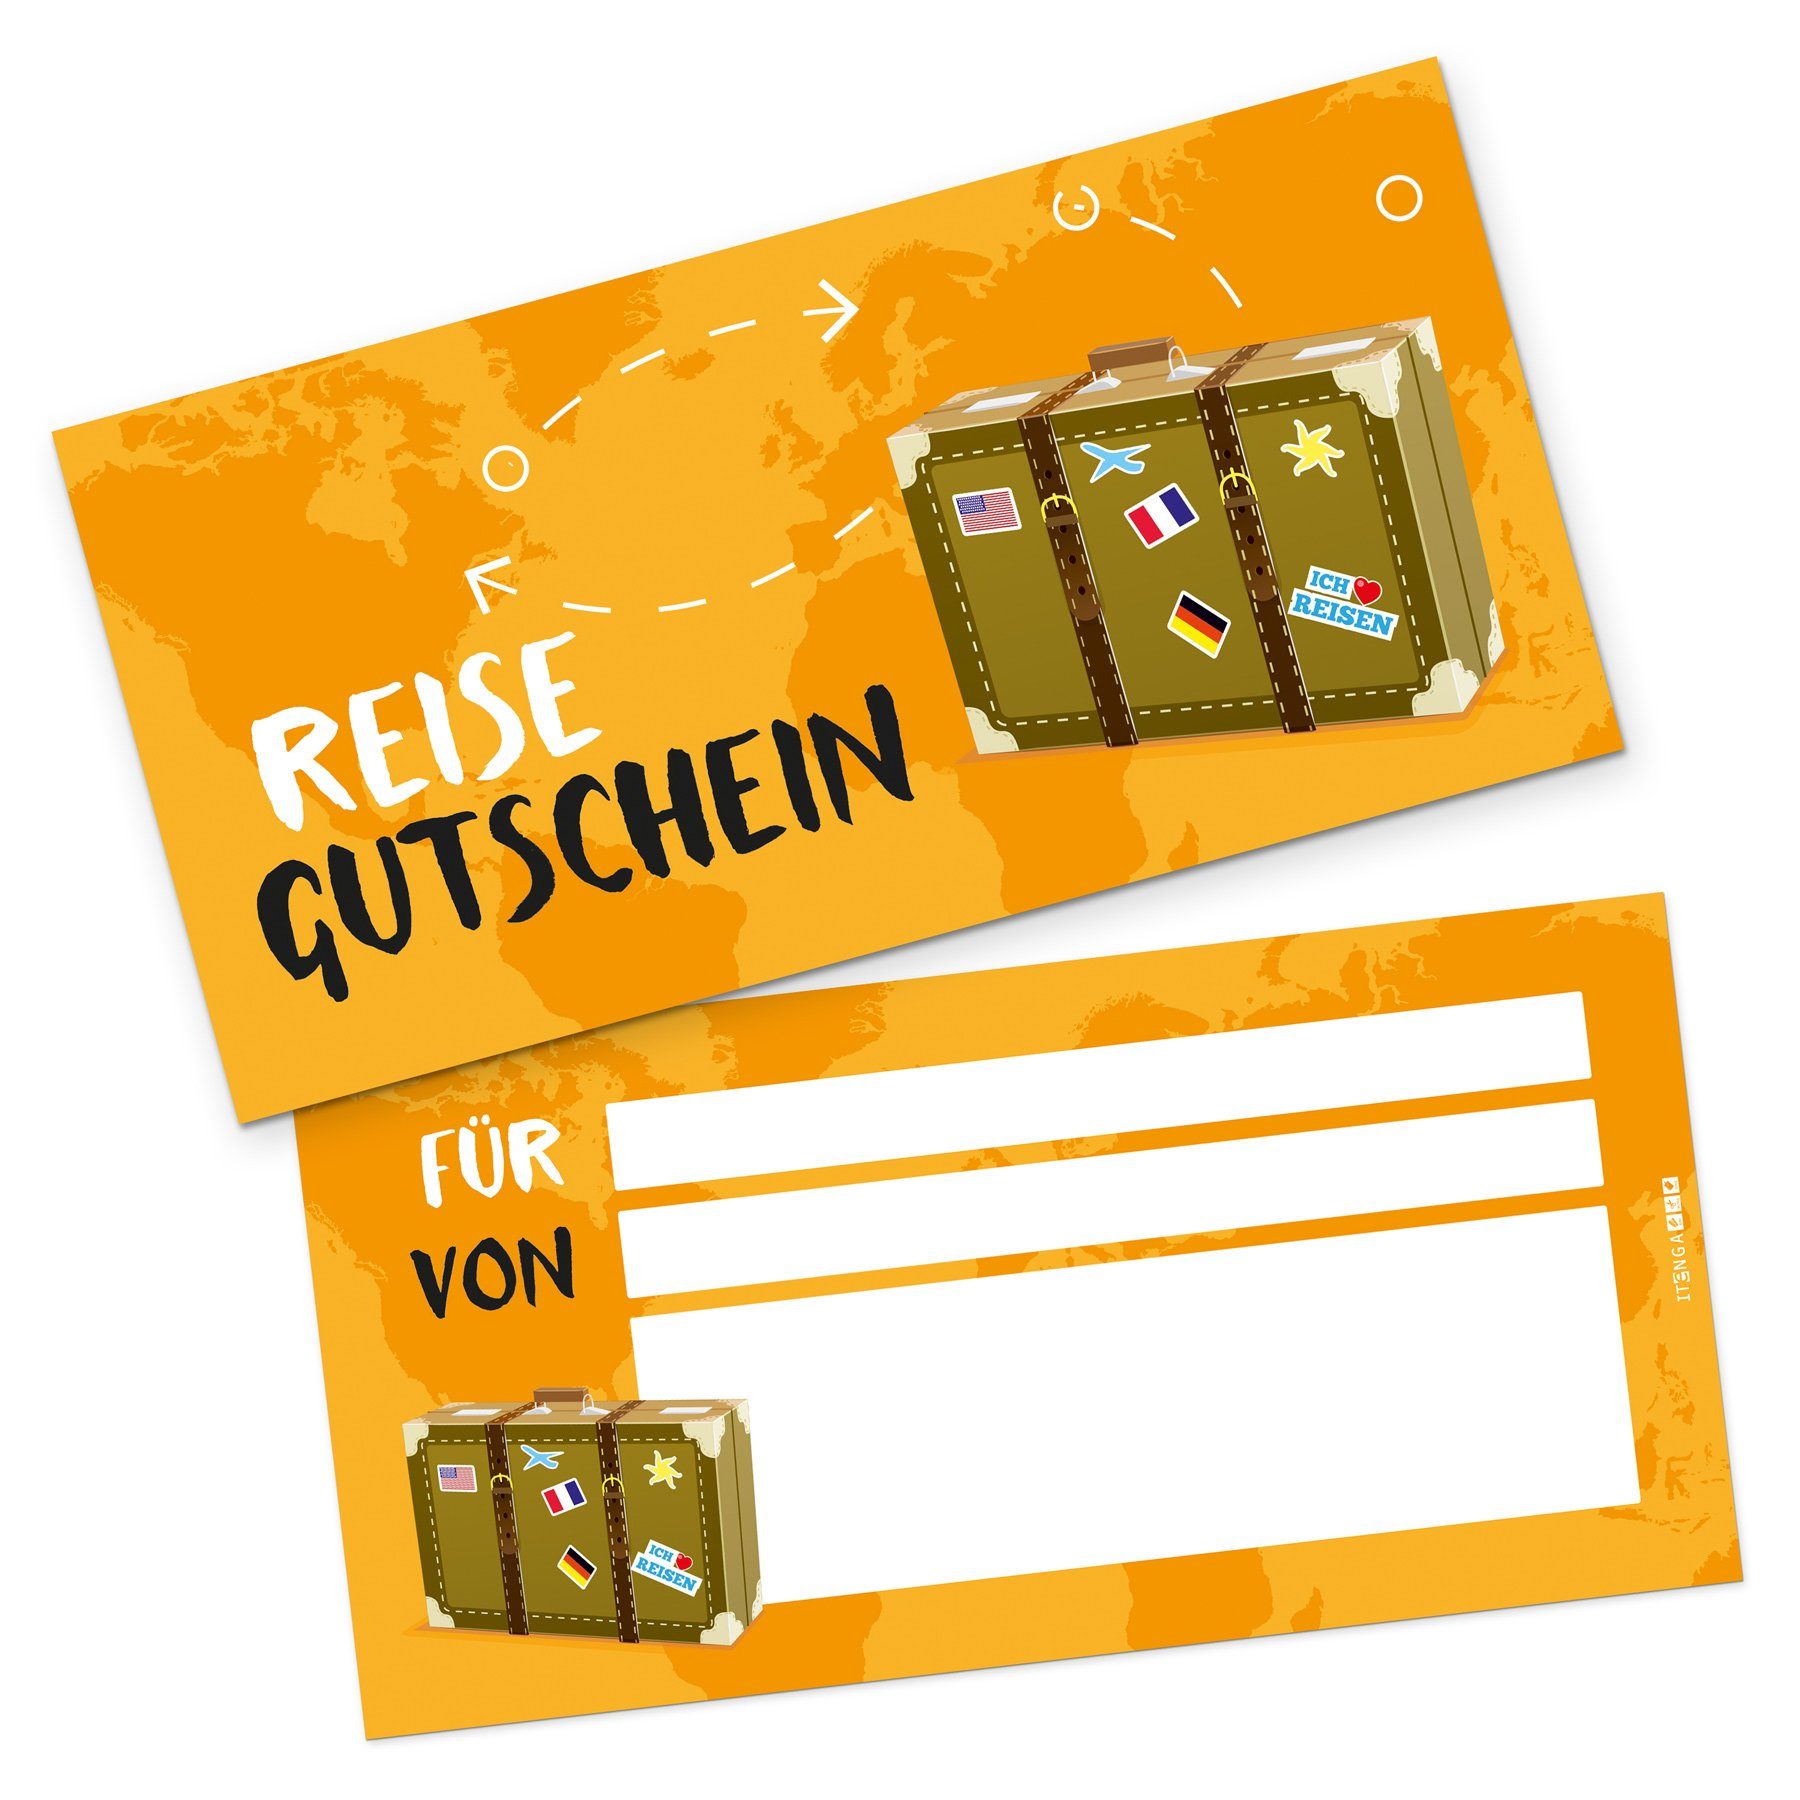 itenga Grußkarten itenga Geschenkgutschein Reise K Gutschein Ausfüllen - zum Reisekoffer